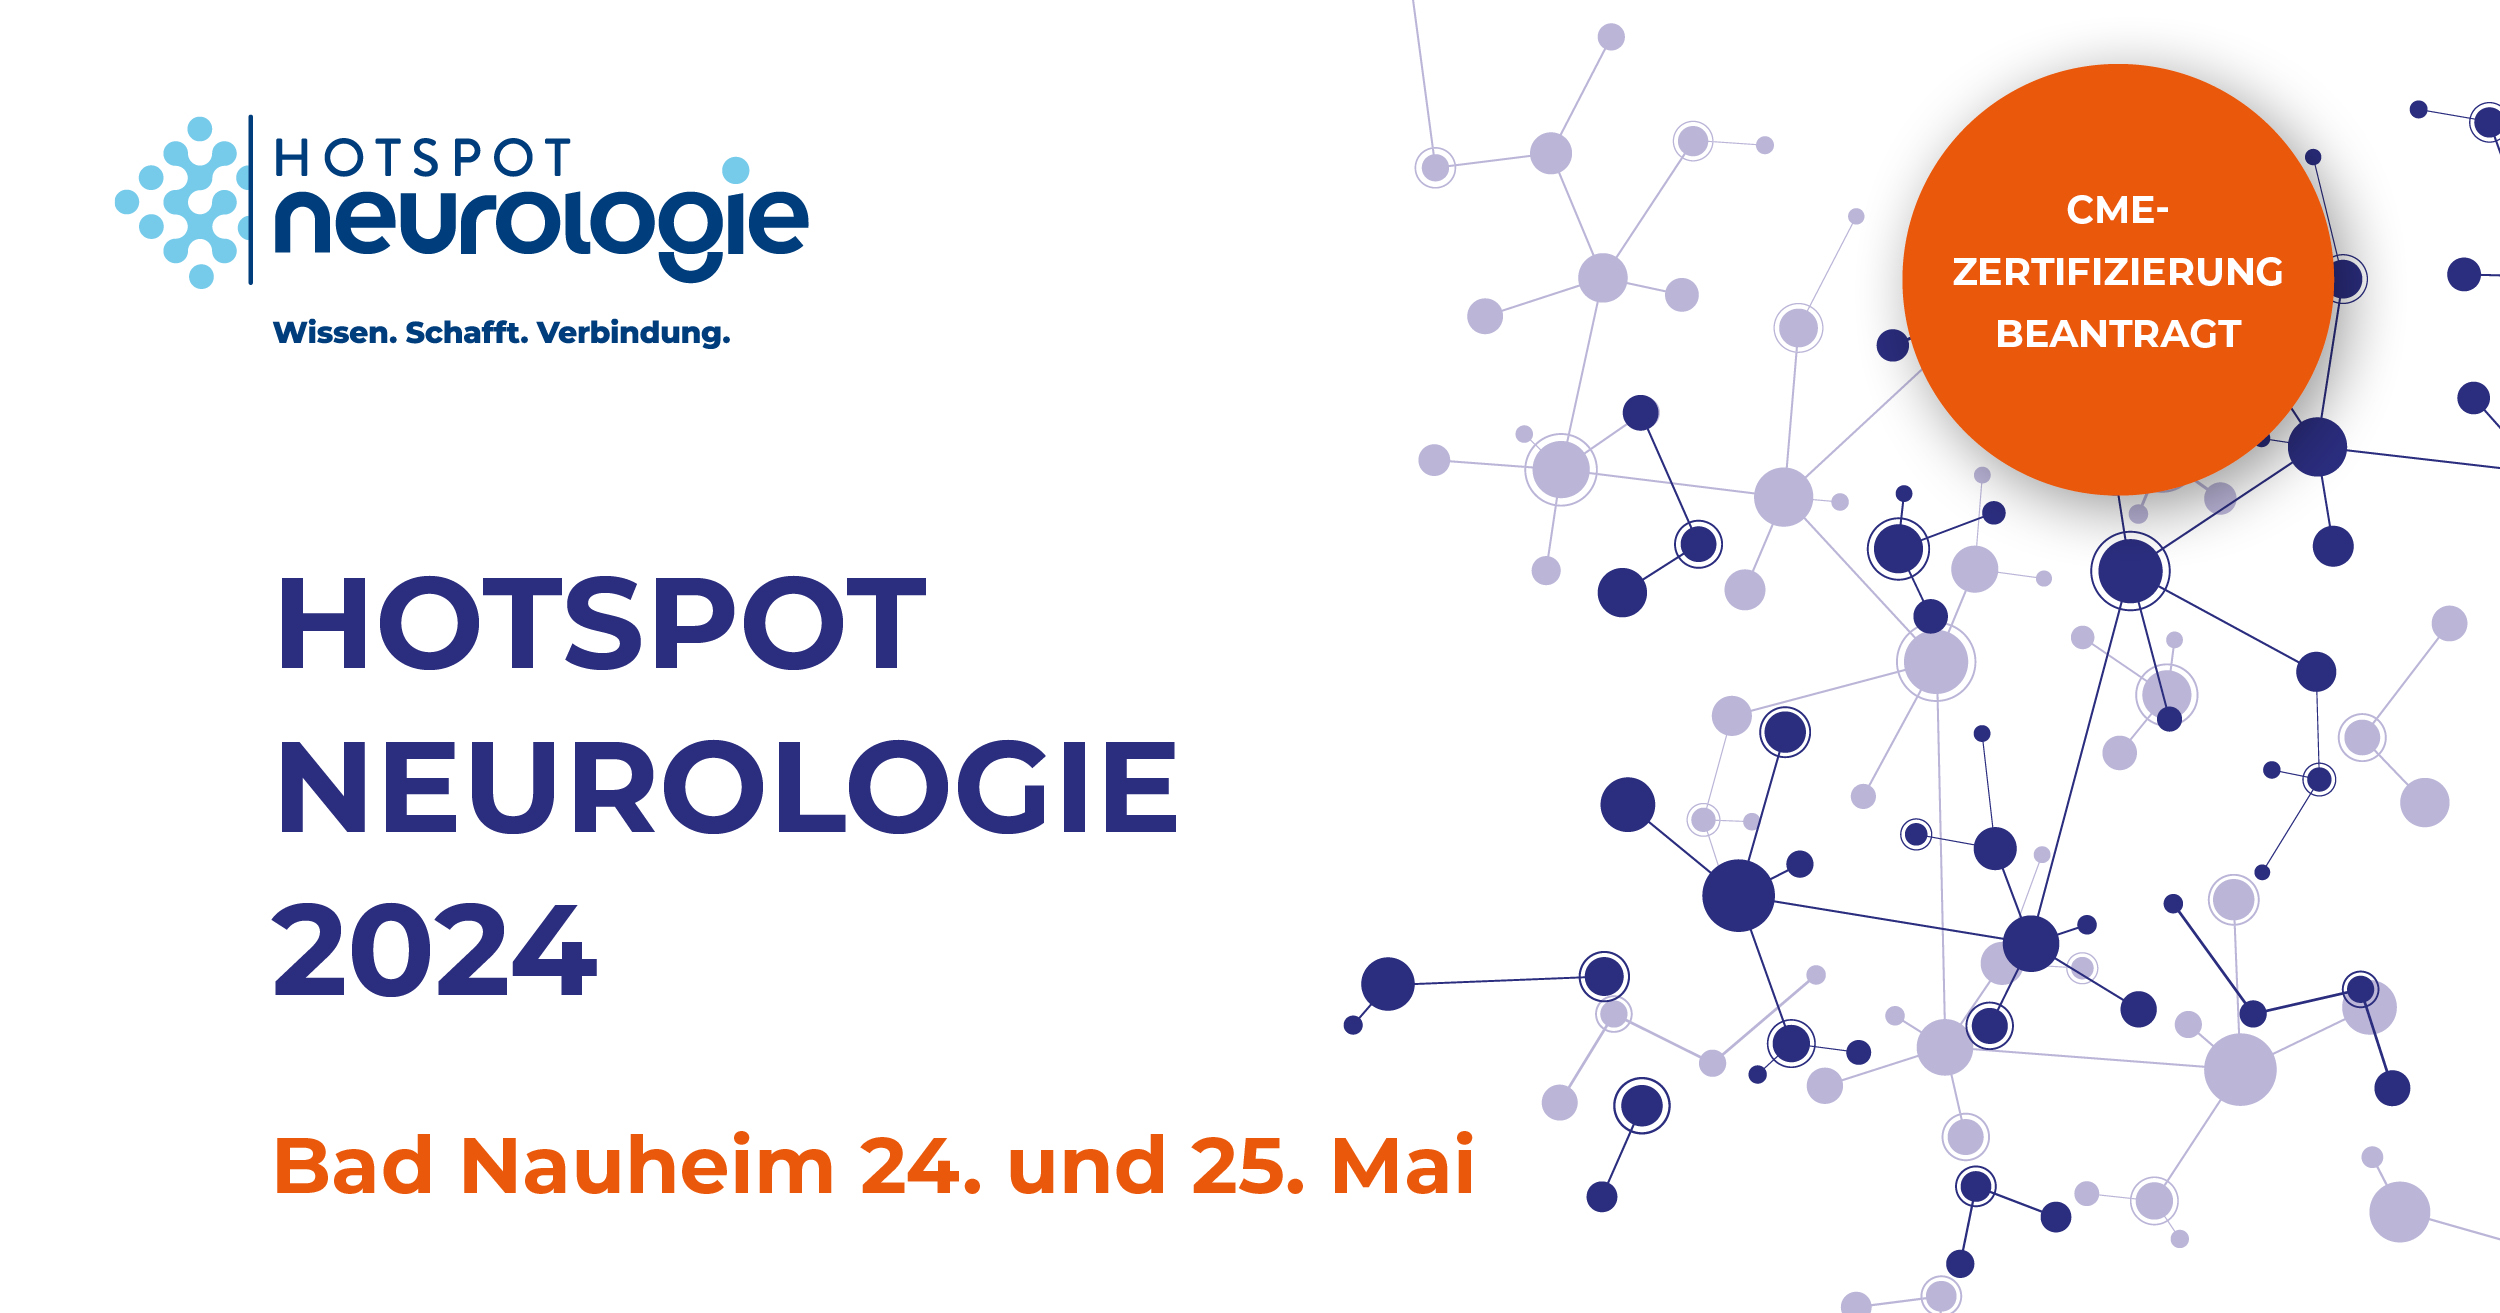 Alexion Hotspot Neurologie 2023 - Berlin 23. - 24. Juni